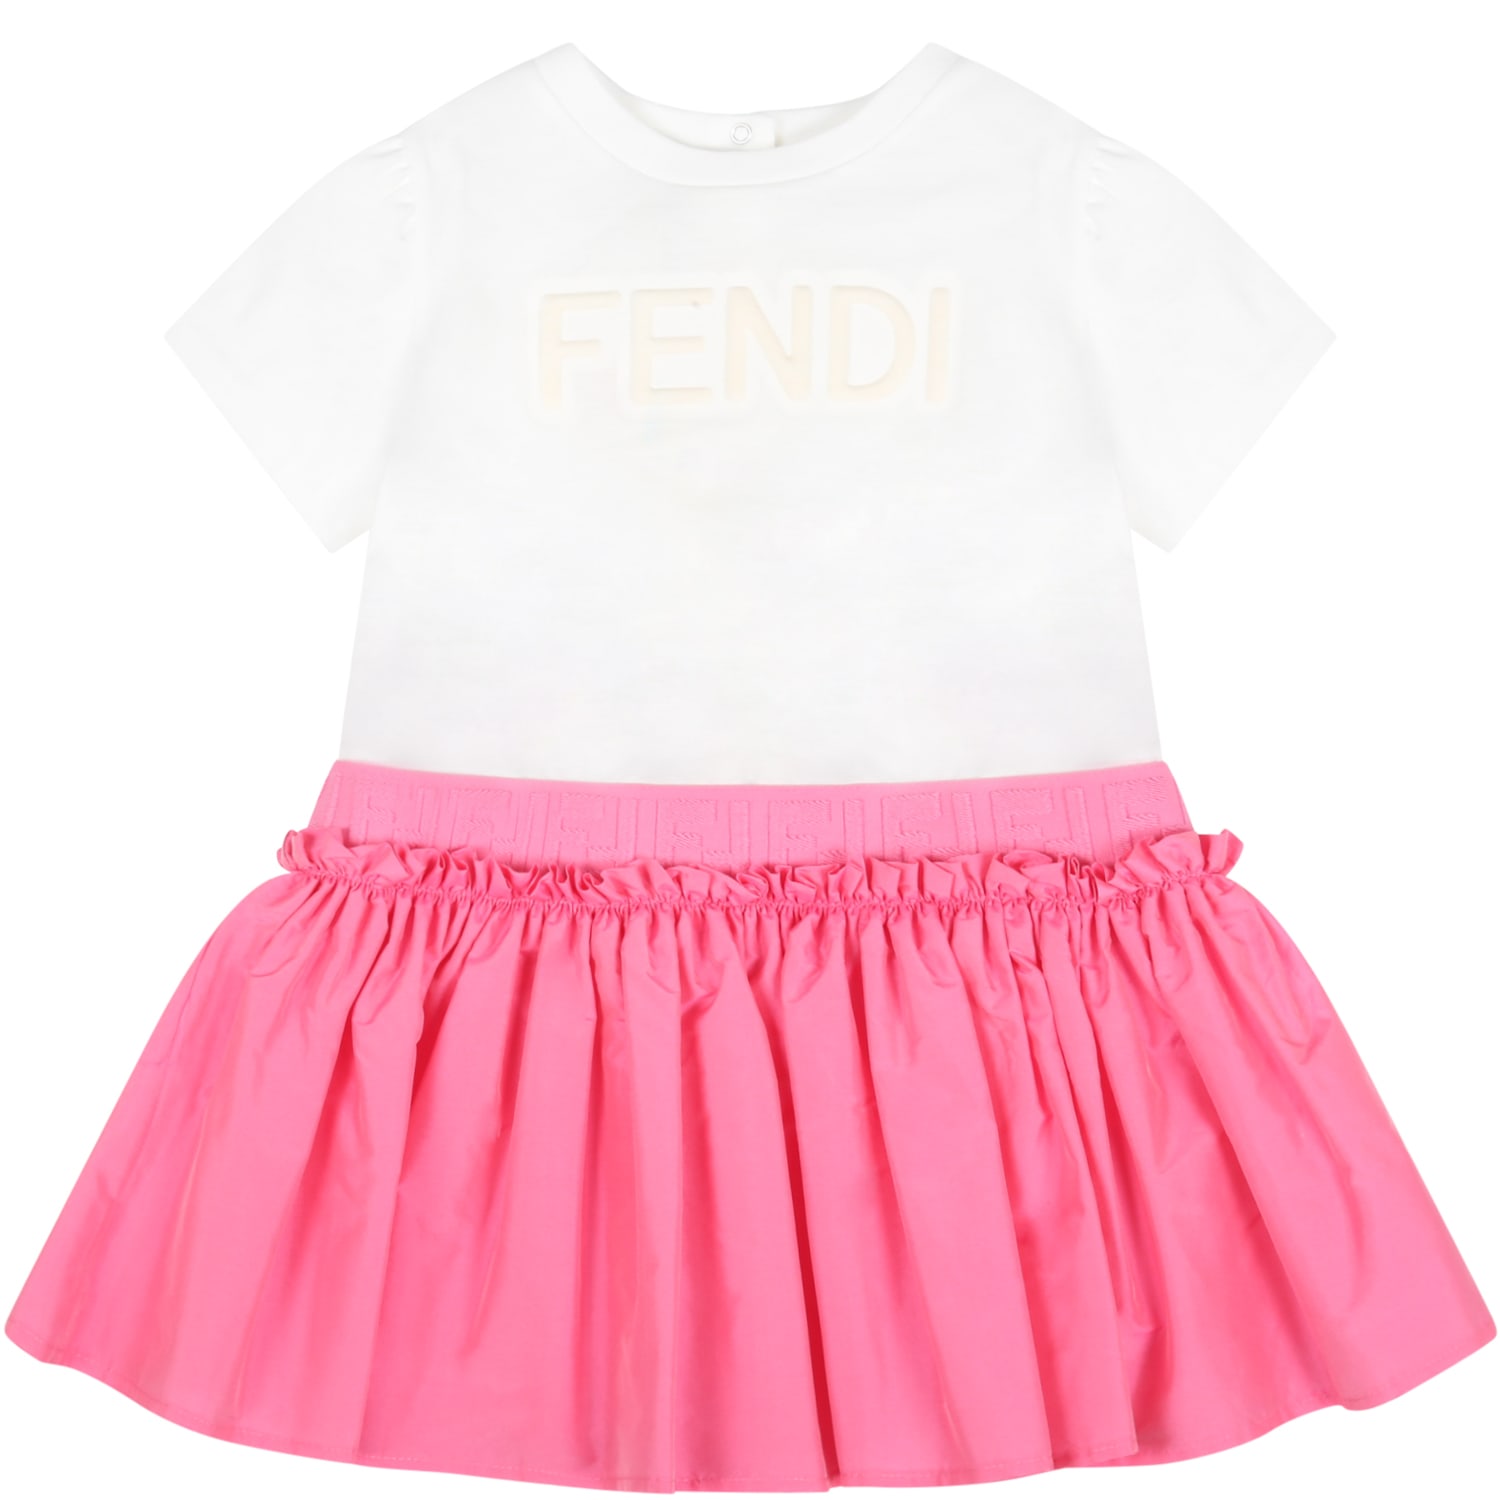 Fendi White Dress For Baby Girl With White Embossed Logo